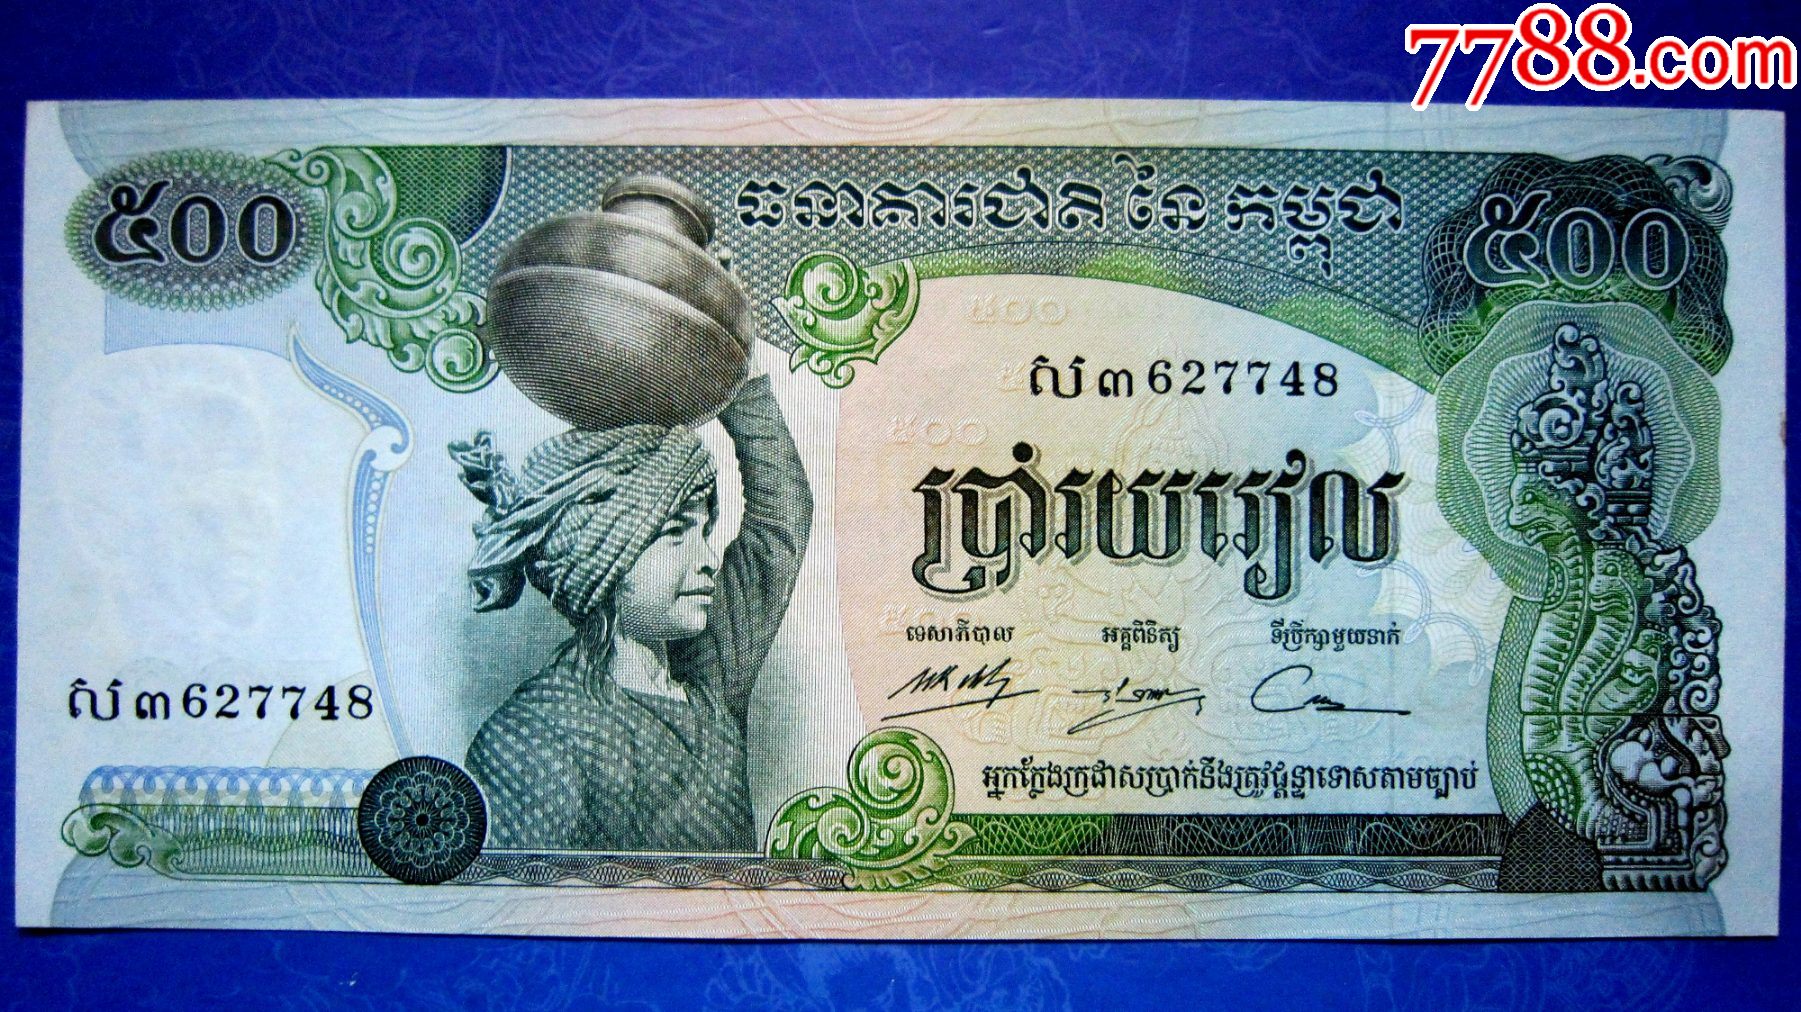 全新UNC柬埔寨1998年5000瑞尔纸币_外国钱币_图片鉴赏_收藏价格_7788像章收藏